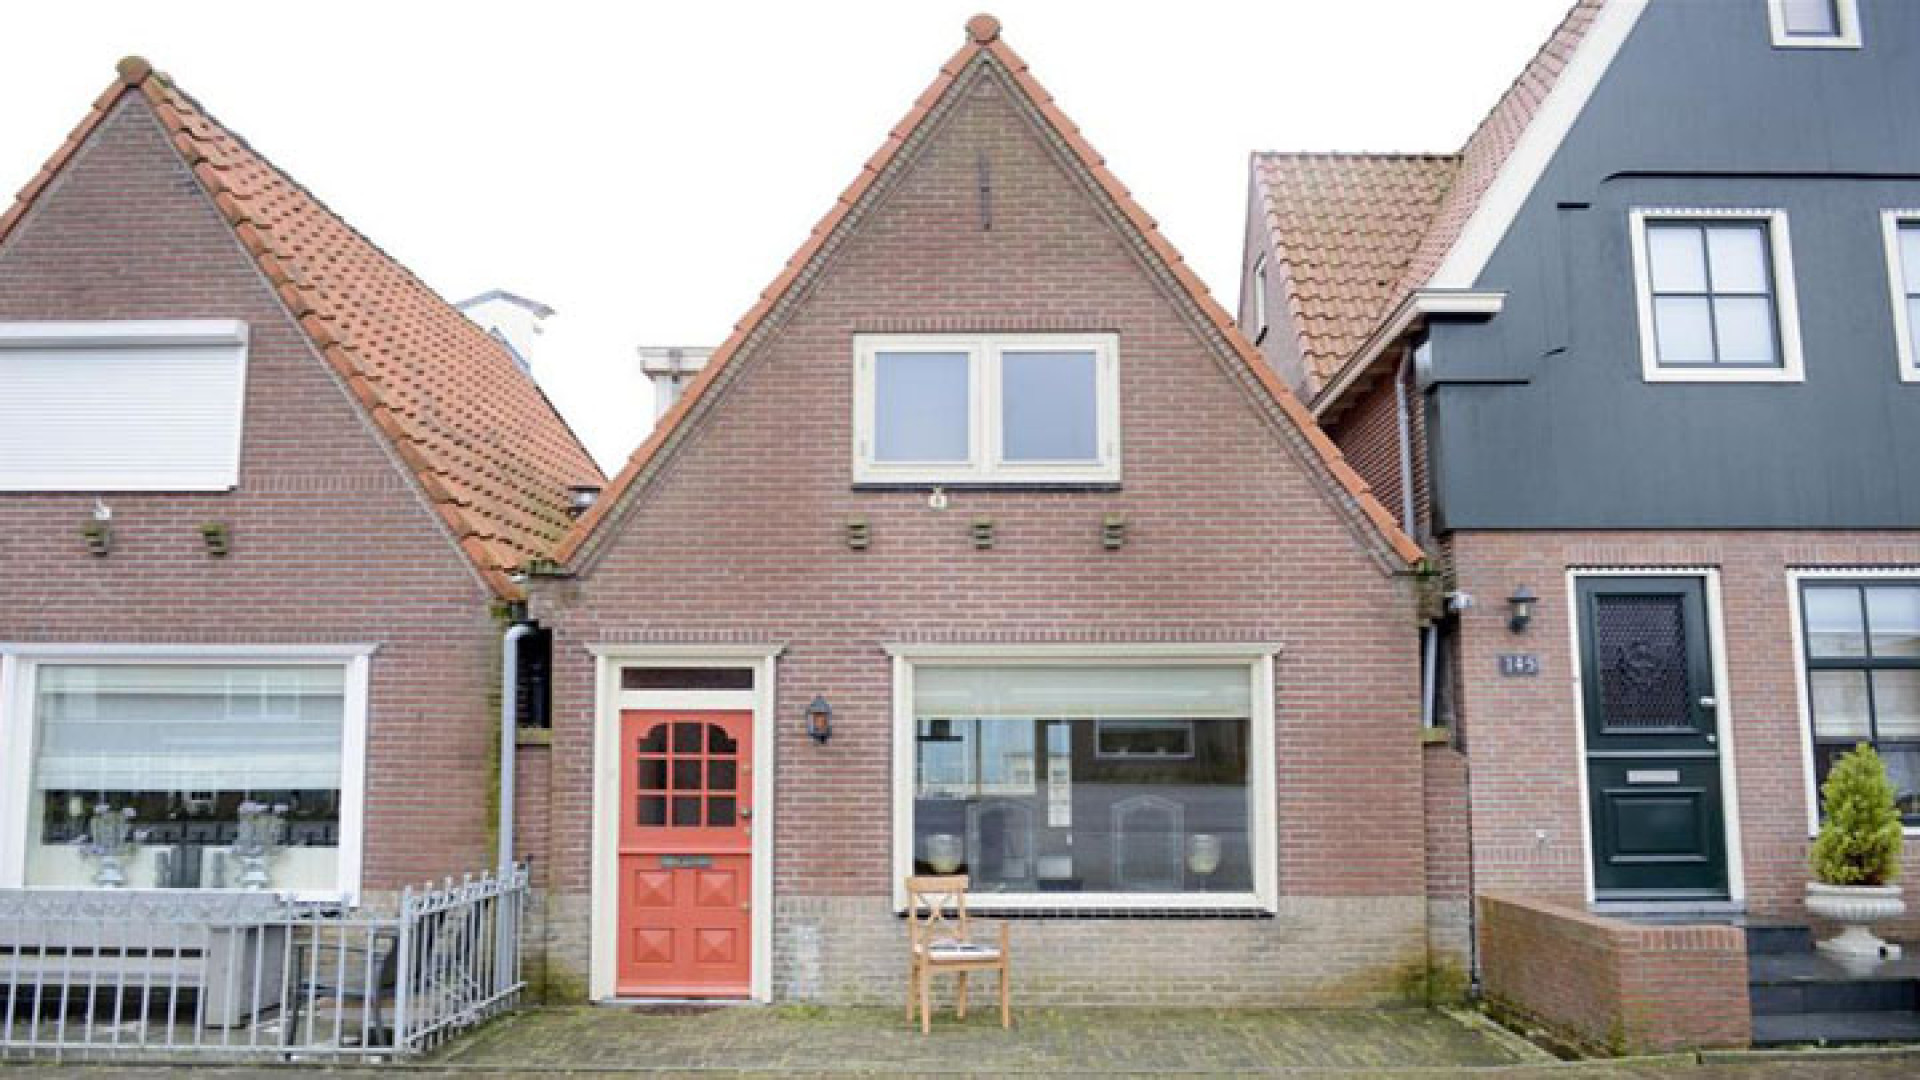 Huis Yolanthe in Volendam eindelijk verkocht. Zie foto's 2